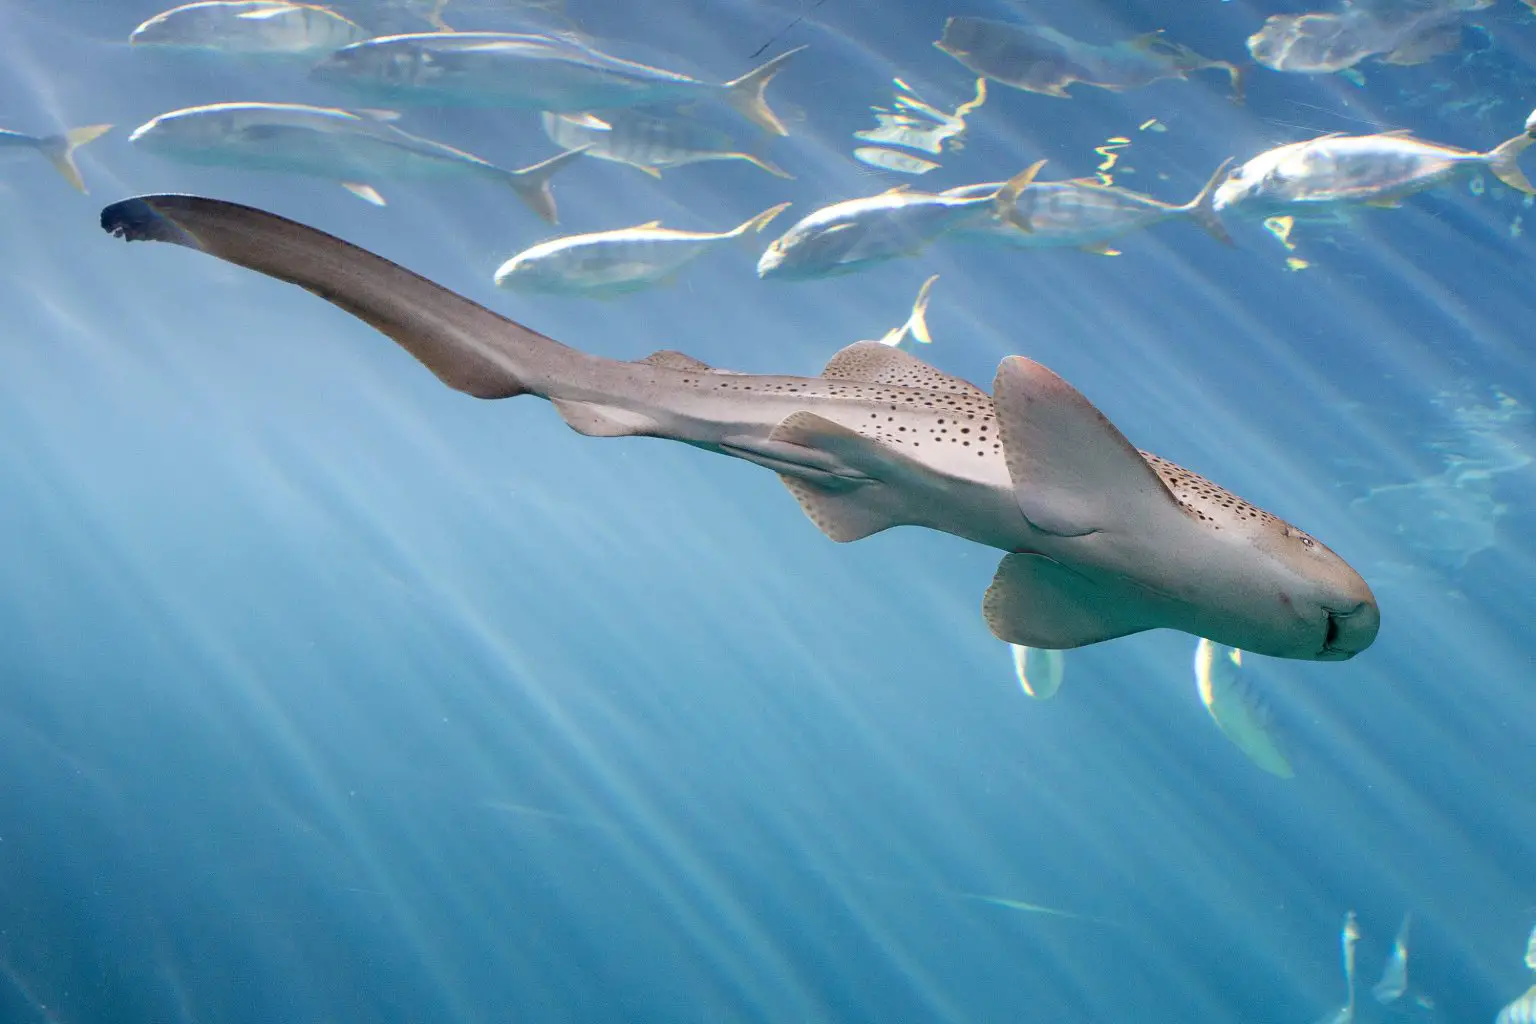 水族馆鲨鱼在有雄性在场的情况下出现 孤雌生殖 的奇特案例